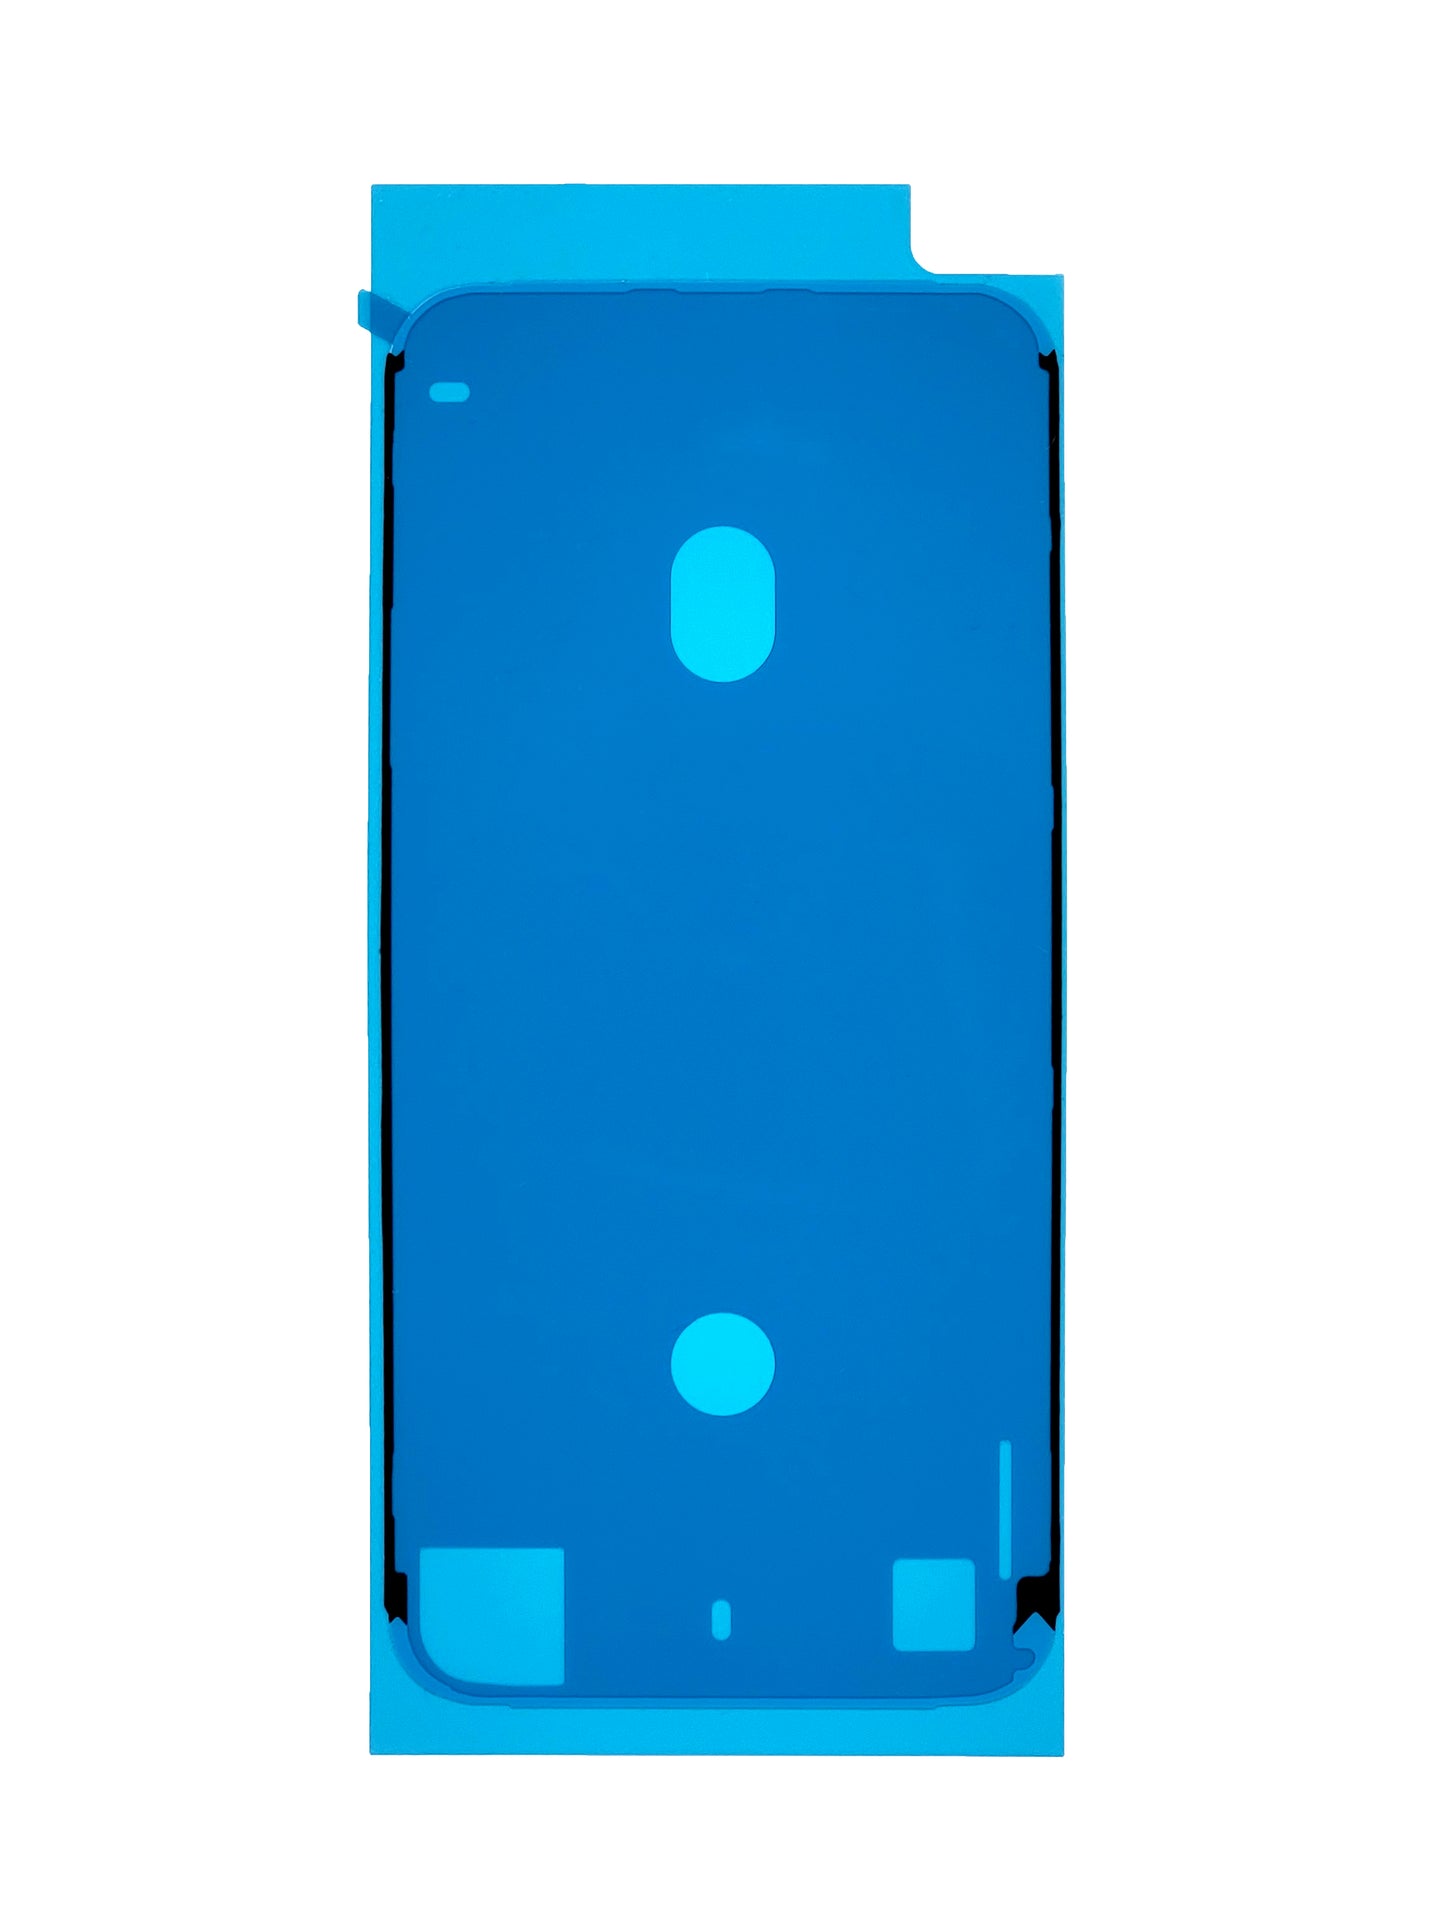 iPhone 8 Waterproof LCD Adhesive Seal (Black)